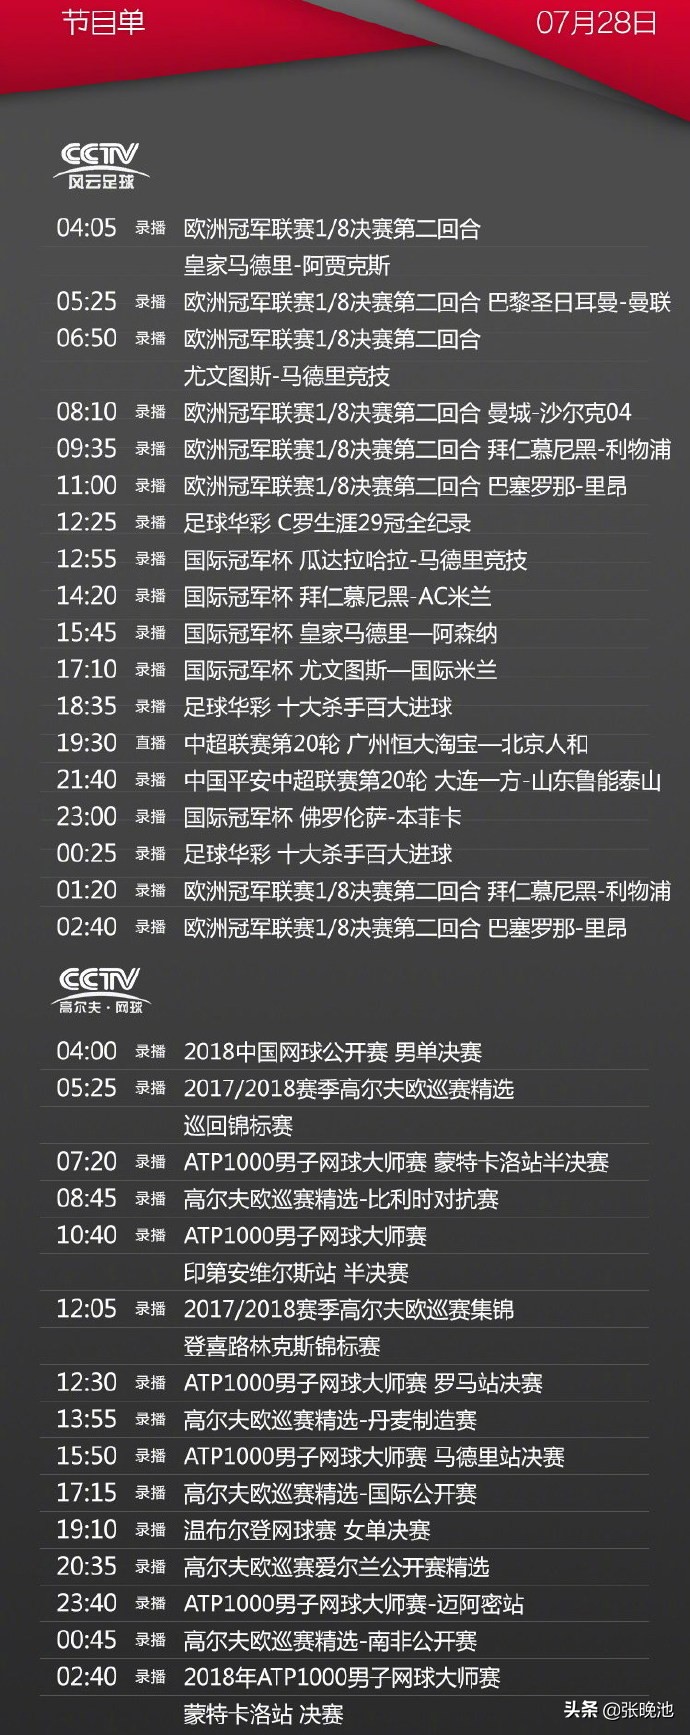 今日央视节目单 风云足球转恒大VS人和 CCTV5+转中国男篮VS喀麦隆